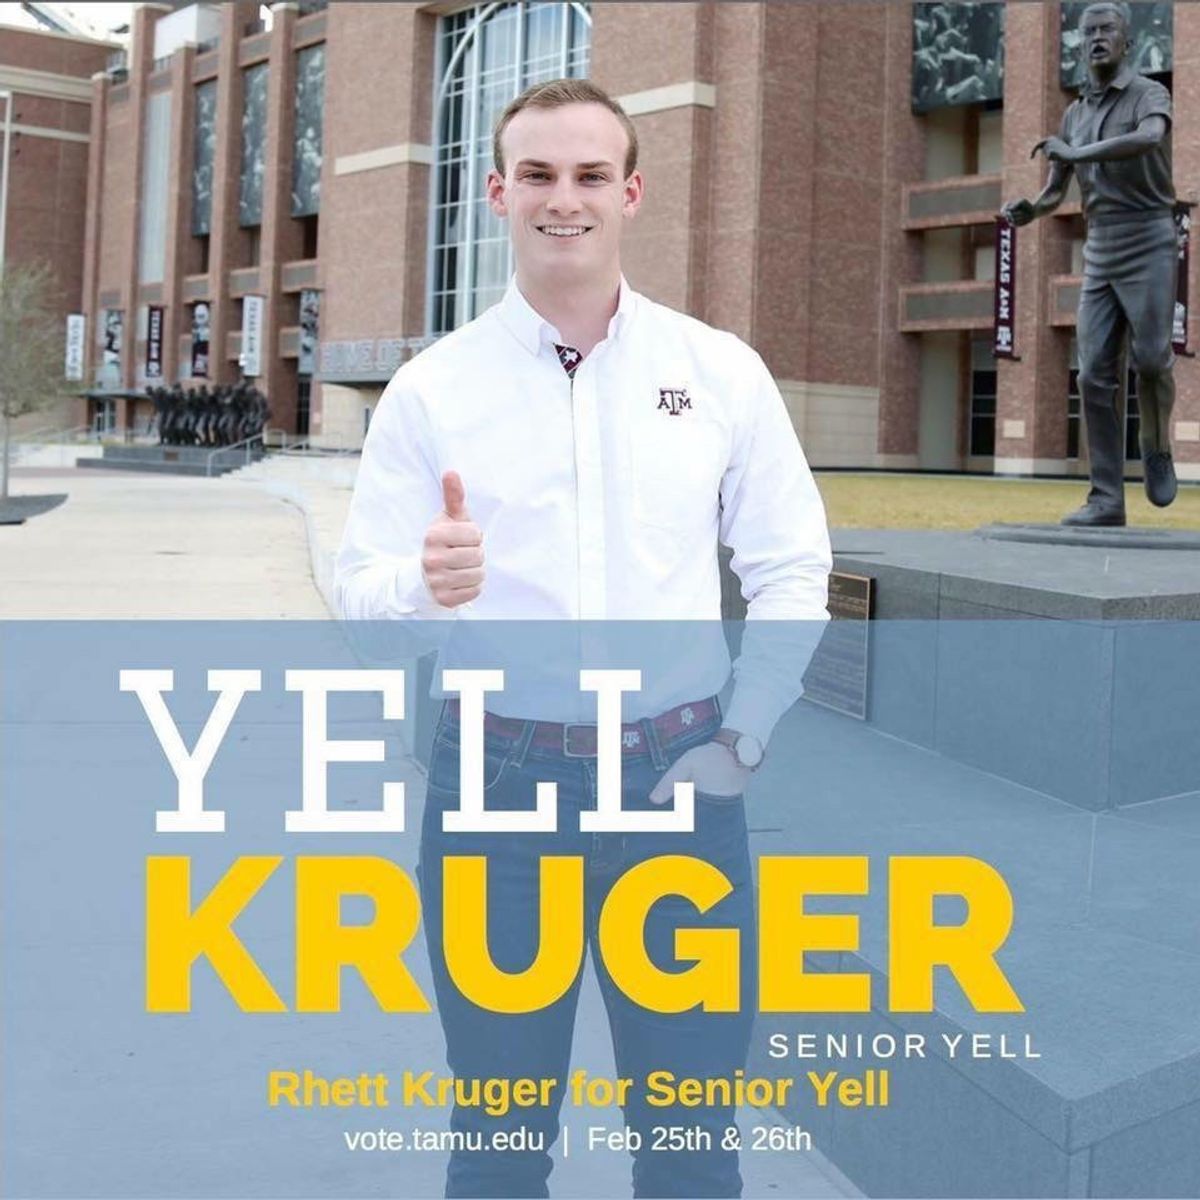 Senior Yell Candidate Rhett Kruger